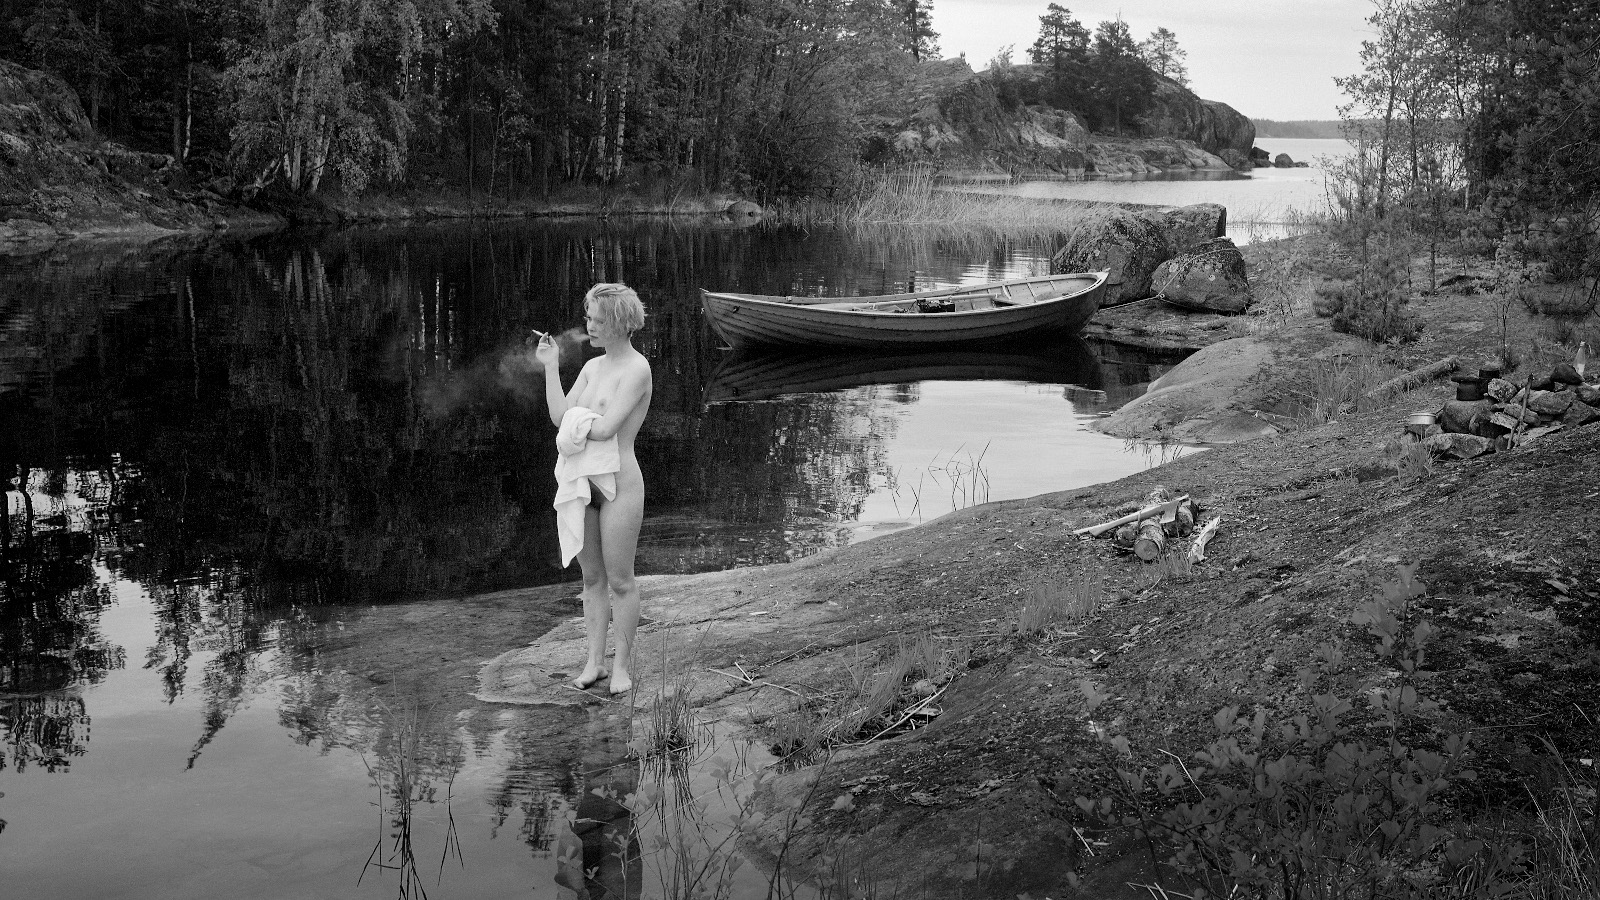 Kuvassa on nuori nainen alasti seisomassa veden äärellä matalan kallion kielekkeen päällä. 